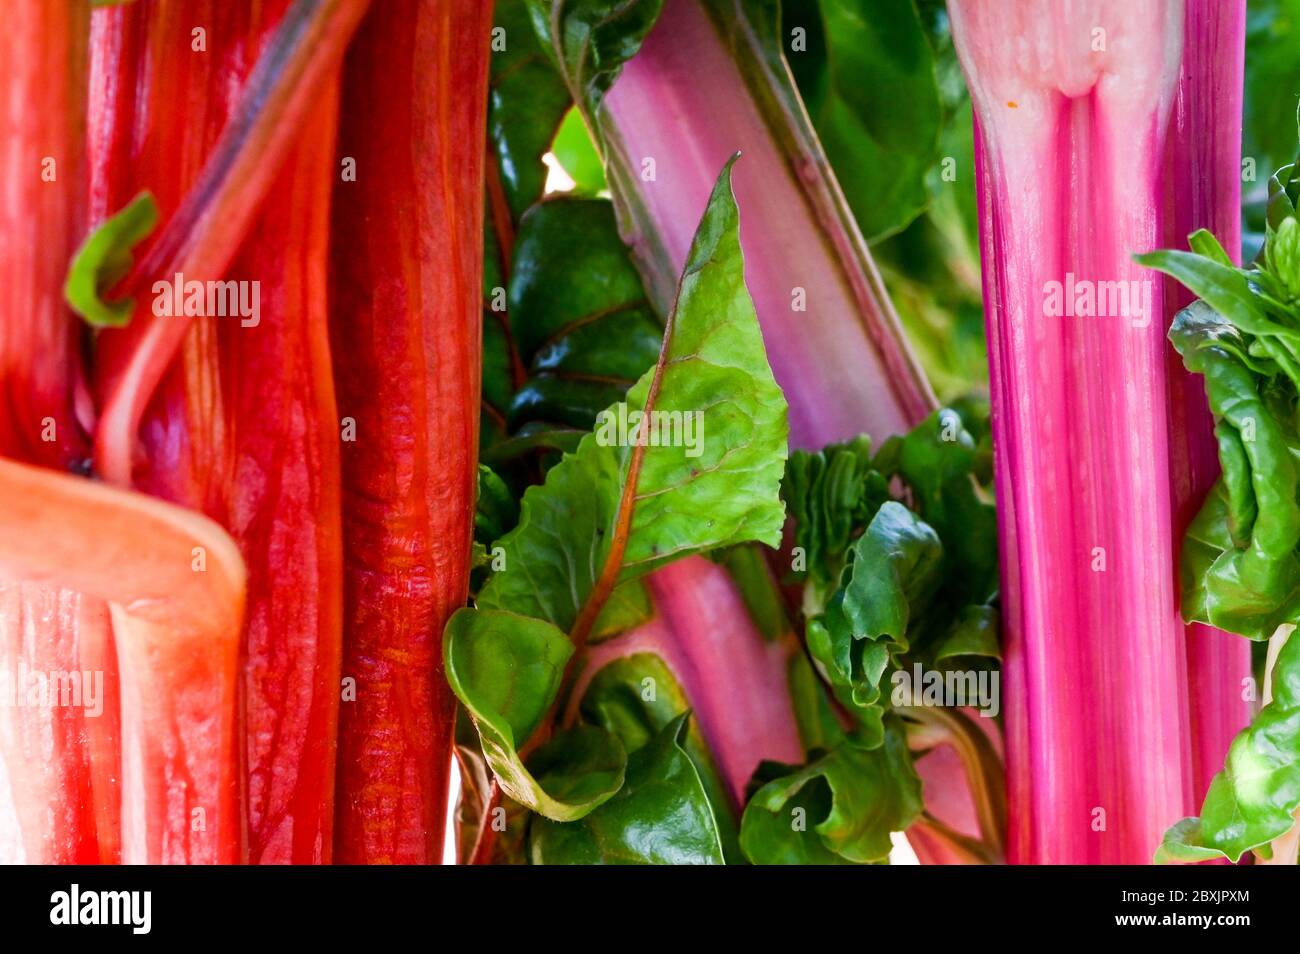 Rosa brillante e rosso gambi di bietole svizzero in crescita / bietole arcobaleno, beta vulgaris. Foto Stock